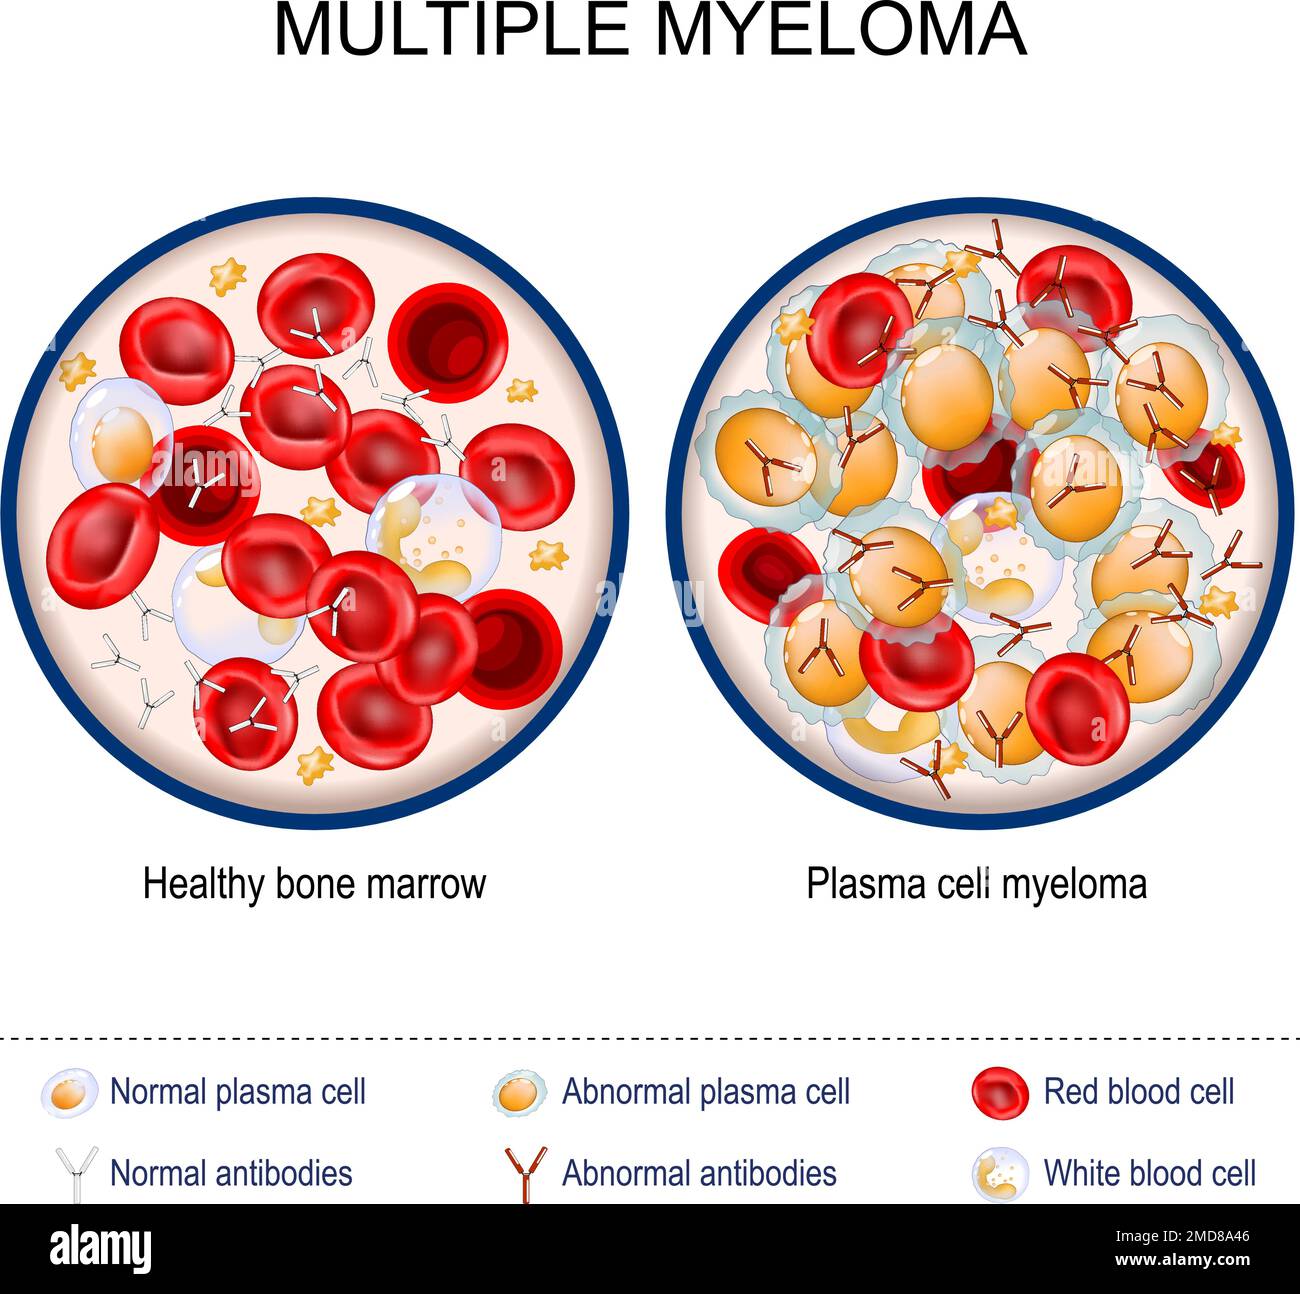 Myélome multiple. Gros plan de la moelle osseuse saine et du myélome à cellules plasmatiques. Globules rouges et blancs, anticorps normaux et anormaux. cancer du plasma Illustration de Vecteur